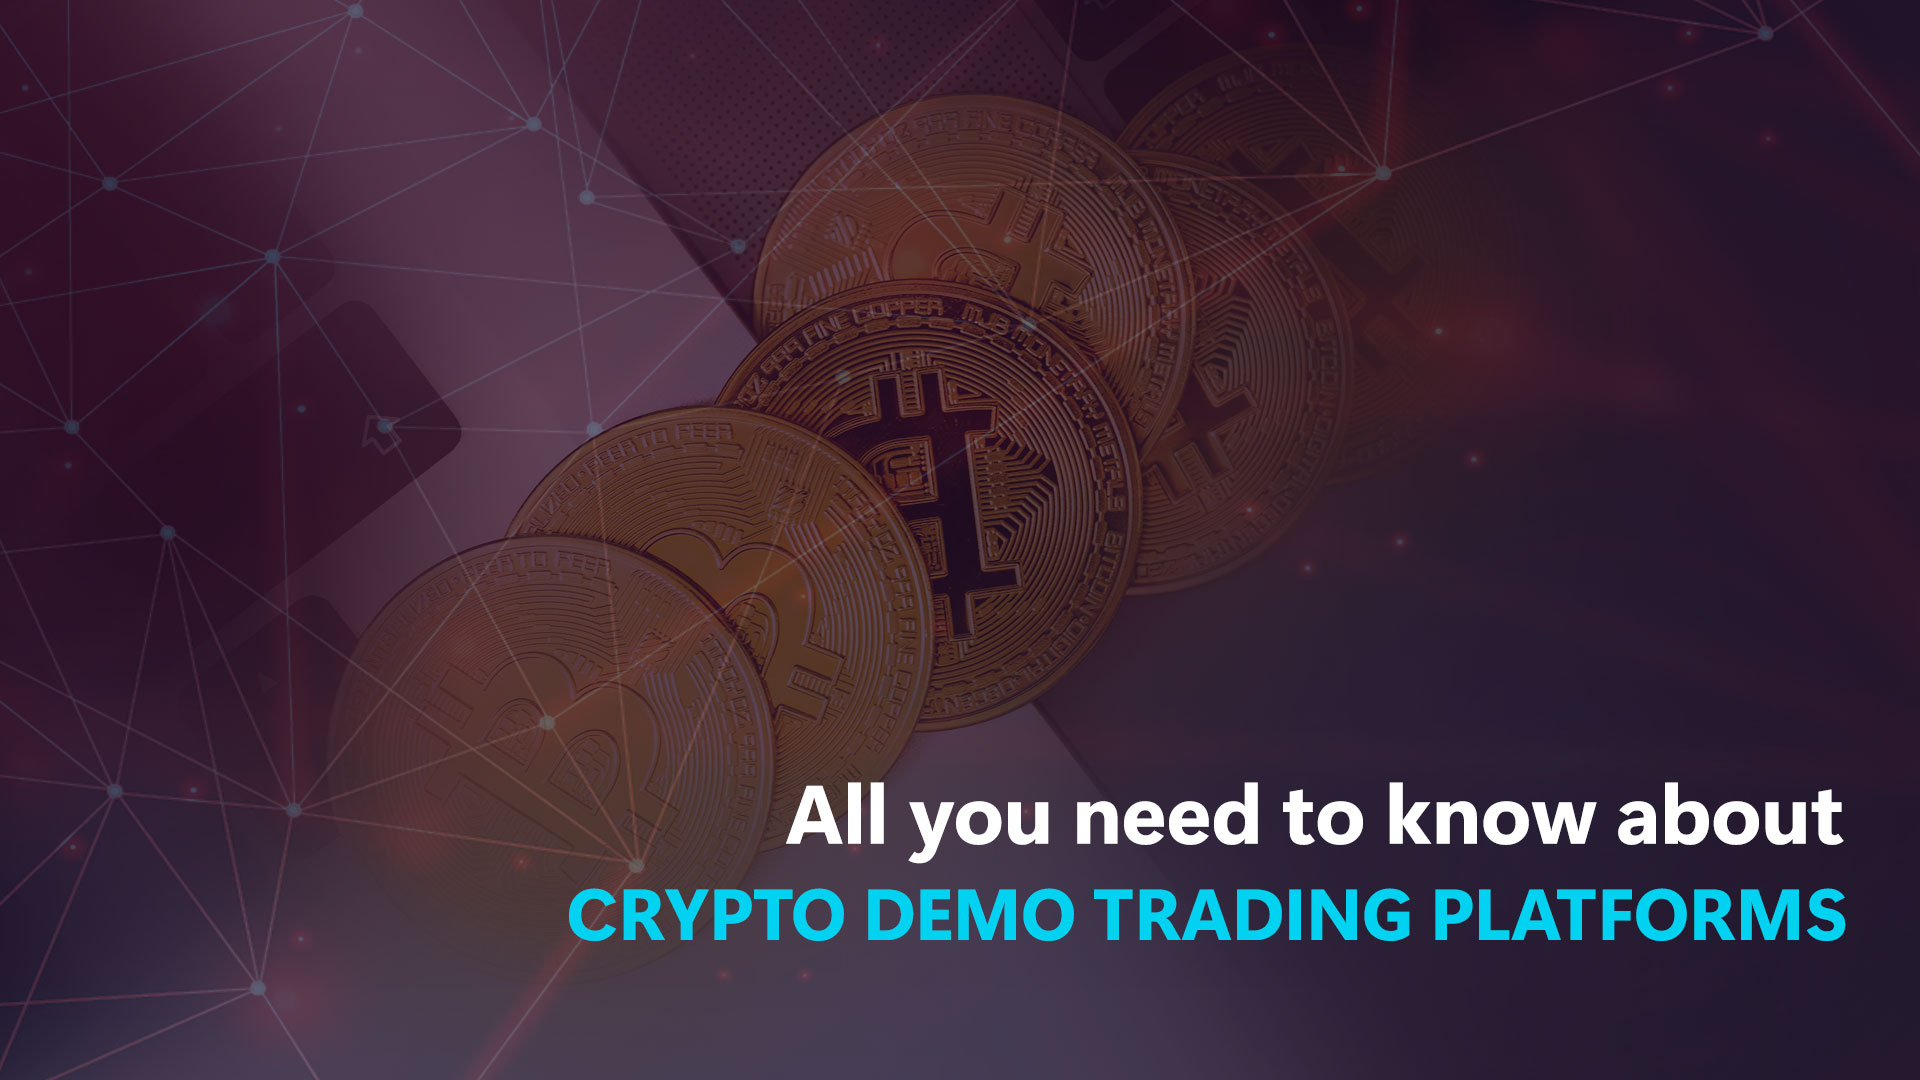 Todo lo que necesita saber sobre las plataformas de trading de demostración de Crypto